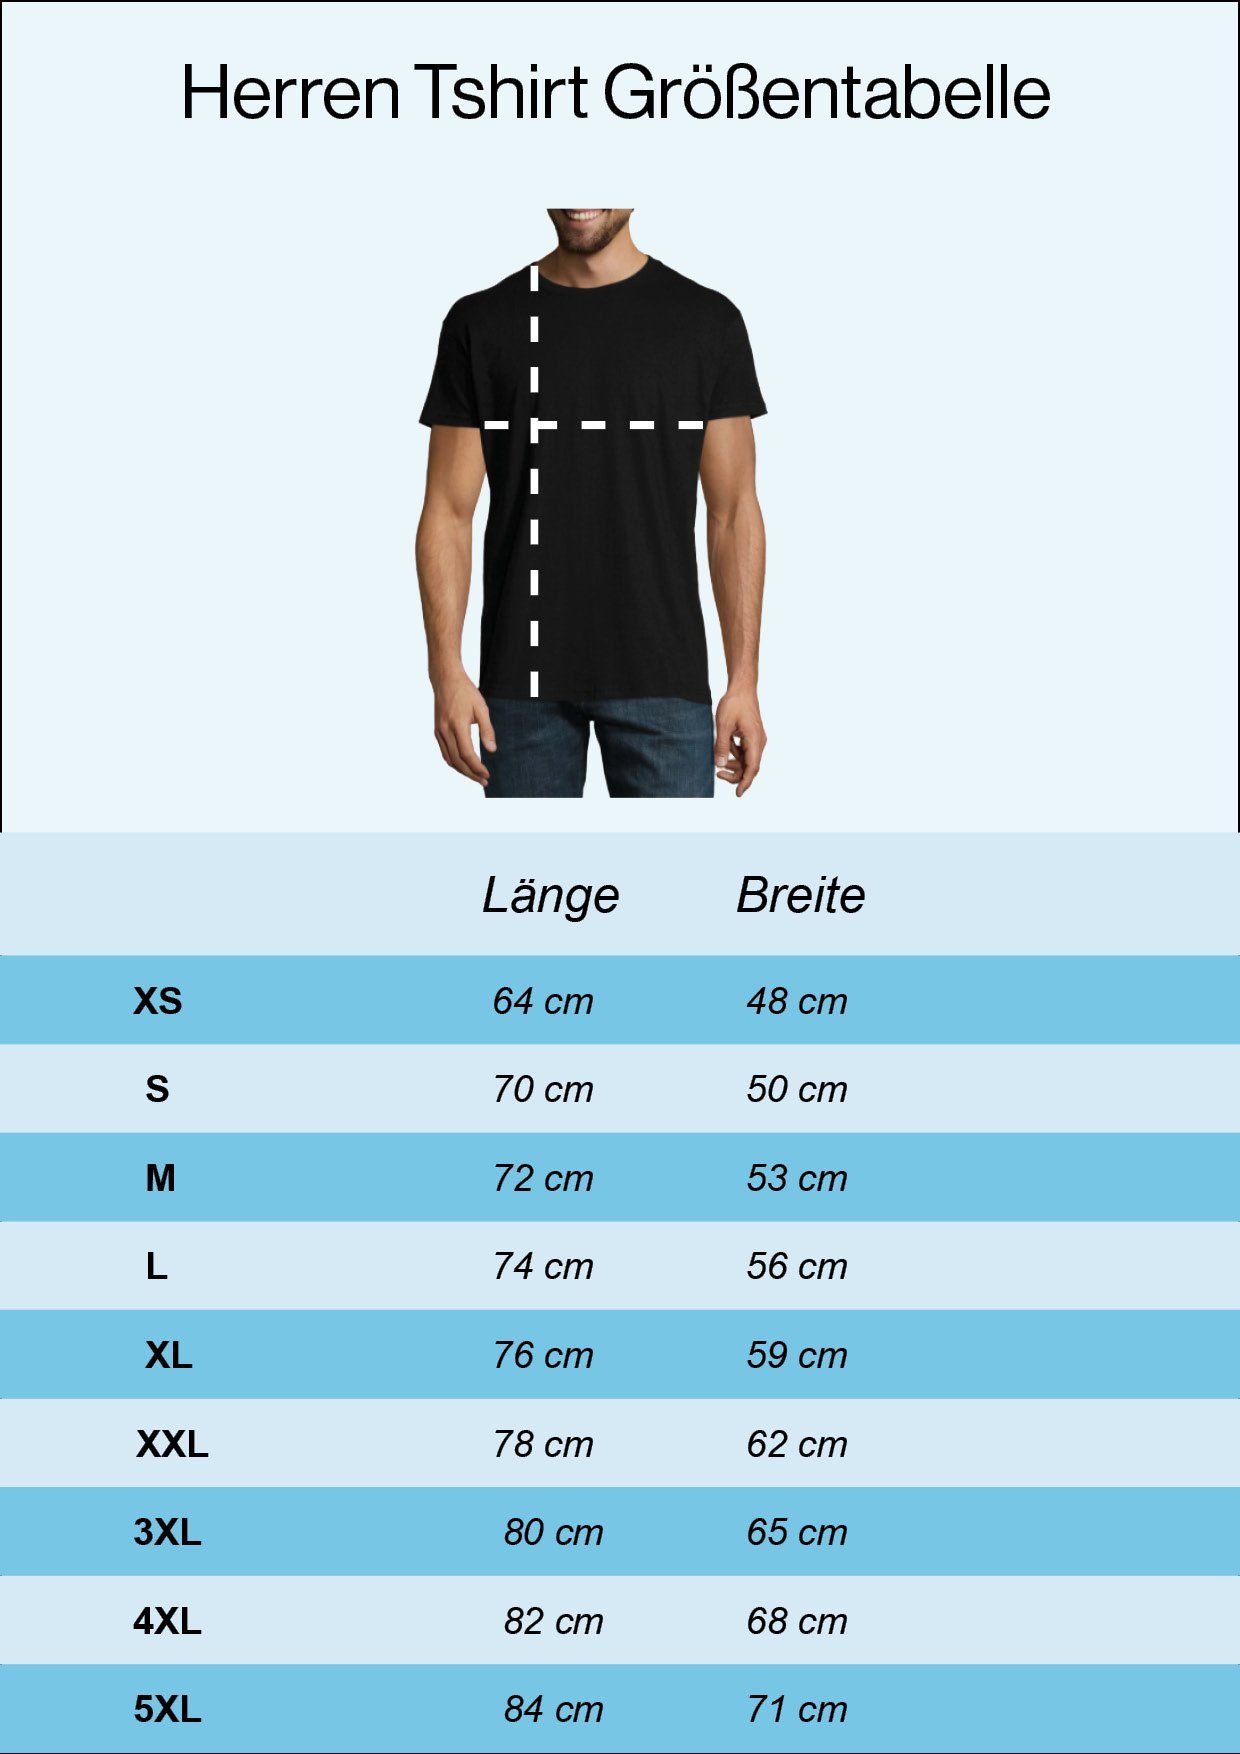 Youth Designz T-Shirt Storage Shirt mit Navyblau Evolution Frontprint Herren trendigem